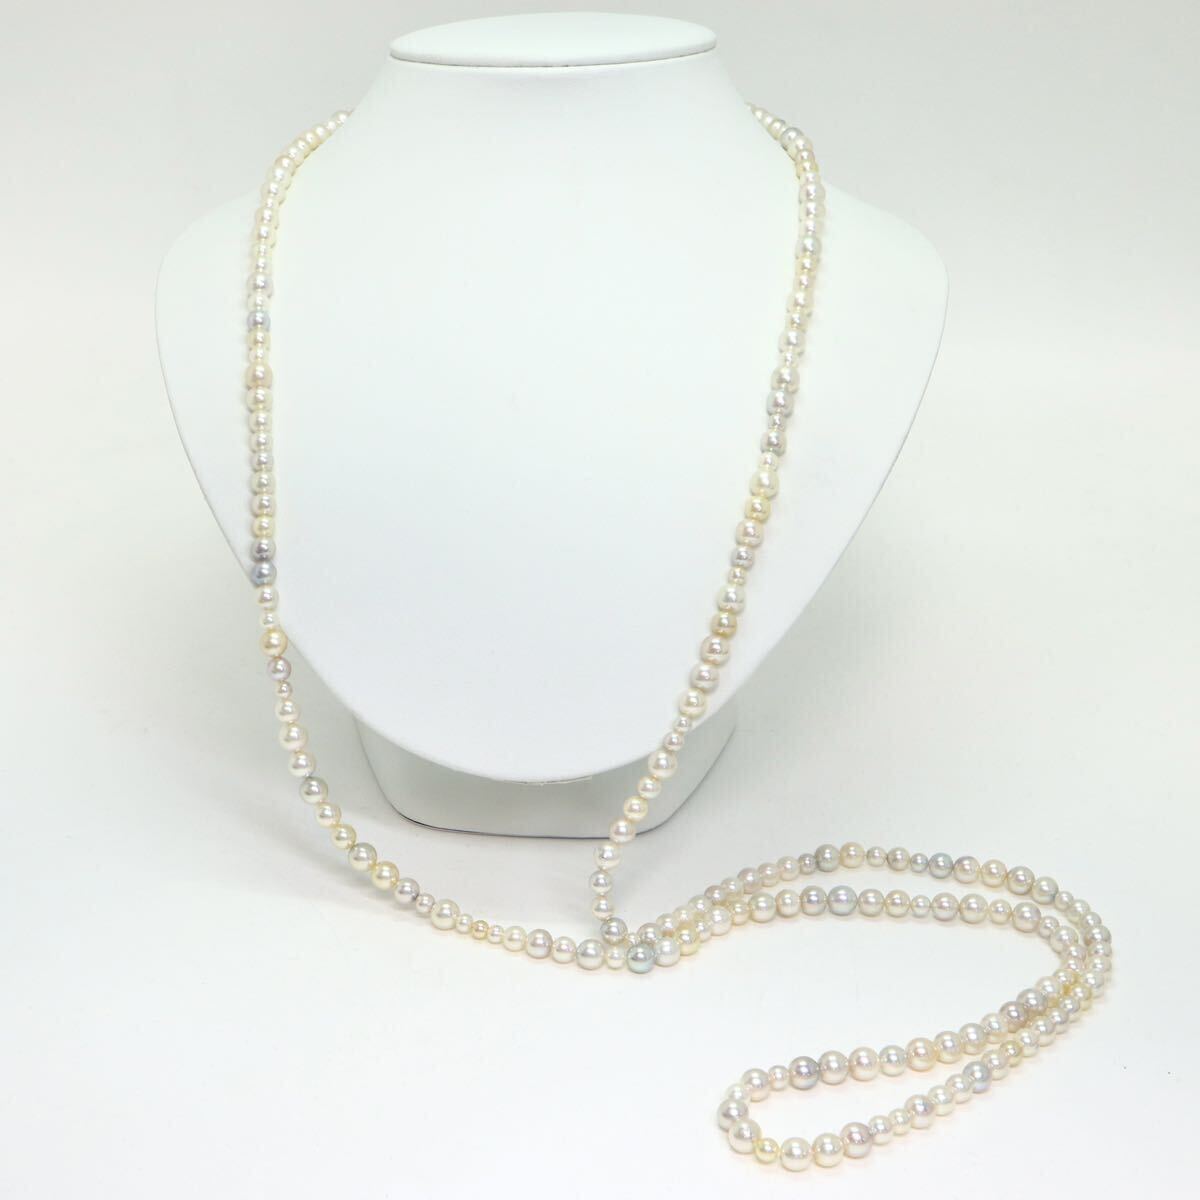 テリ良し!!《K18WG アコヤ本真珠ロングネックレス》A 約4.0-7.0mm珠 63.6g 約120.5cm pearl necklace ジュエリー jewelry CA0/CA0の画像2